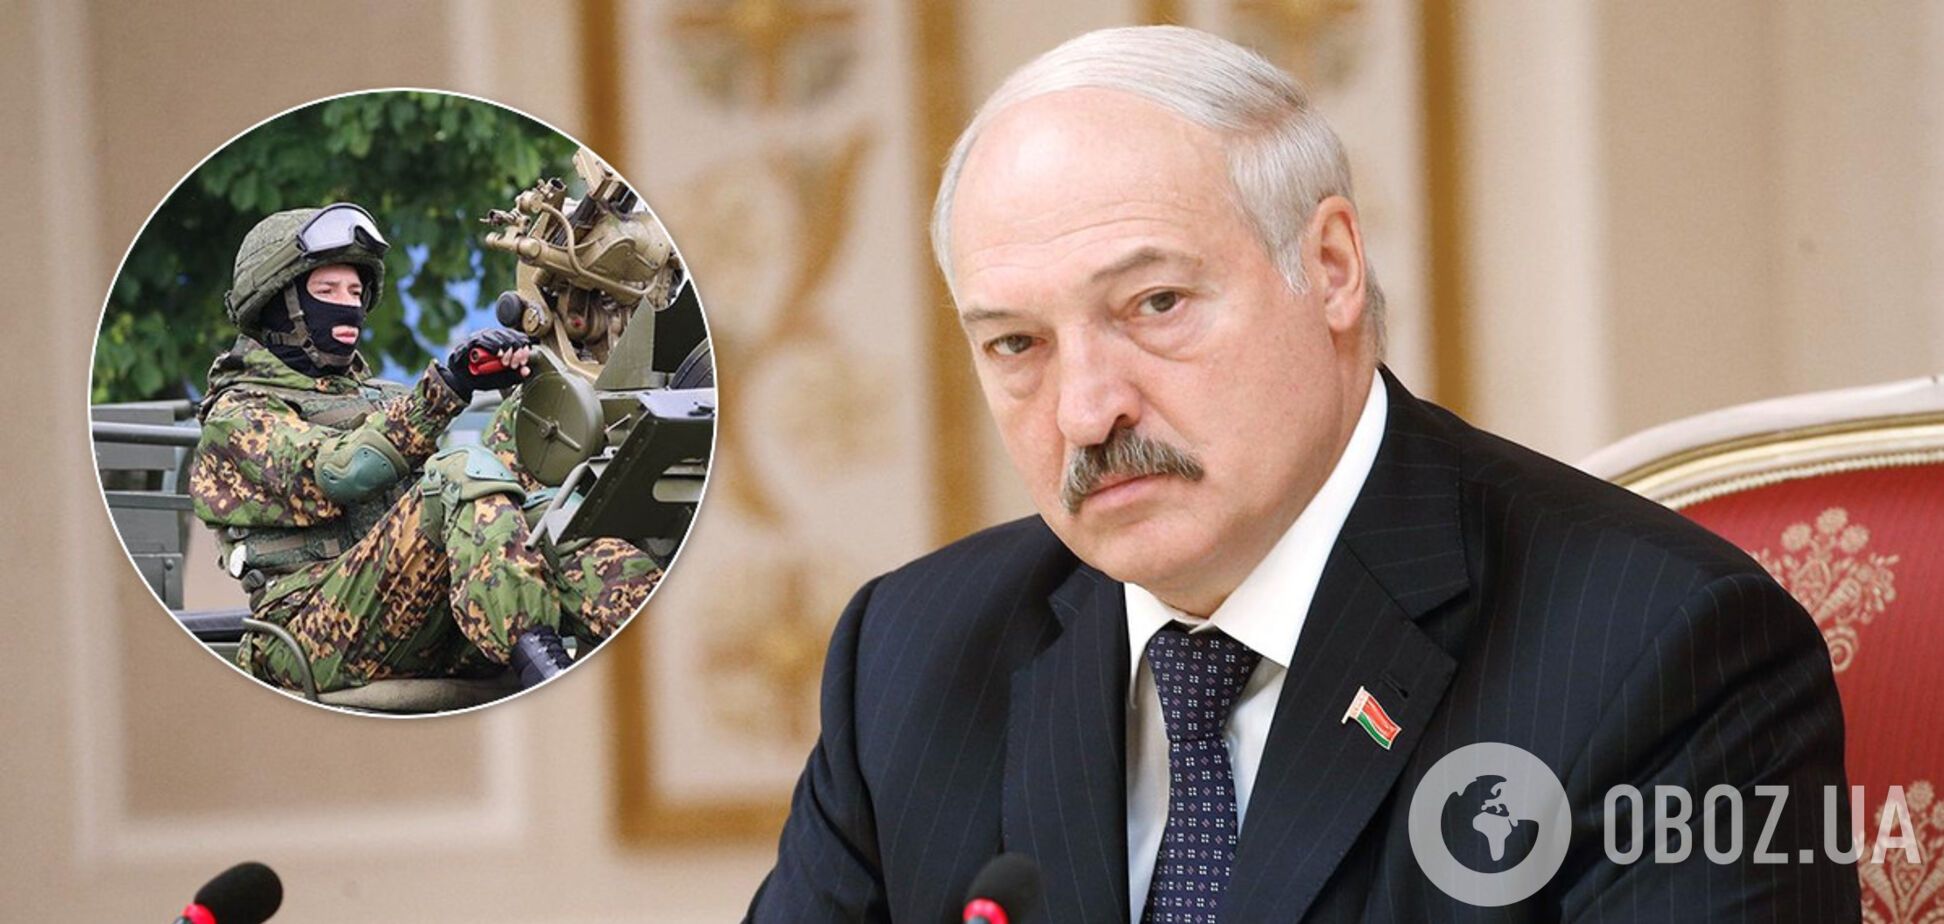 Александр Лукашенко приказал военным защитить суверенитет Беларуси